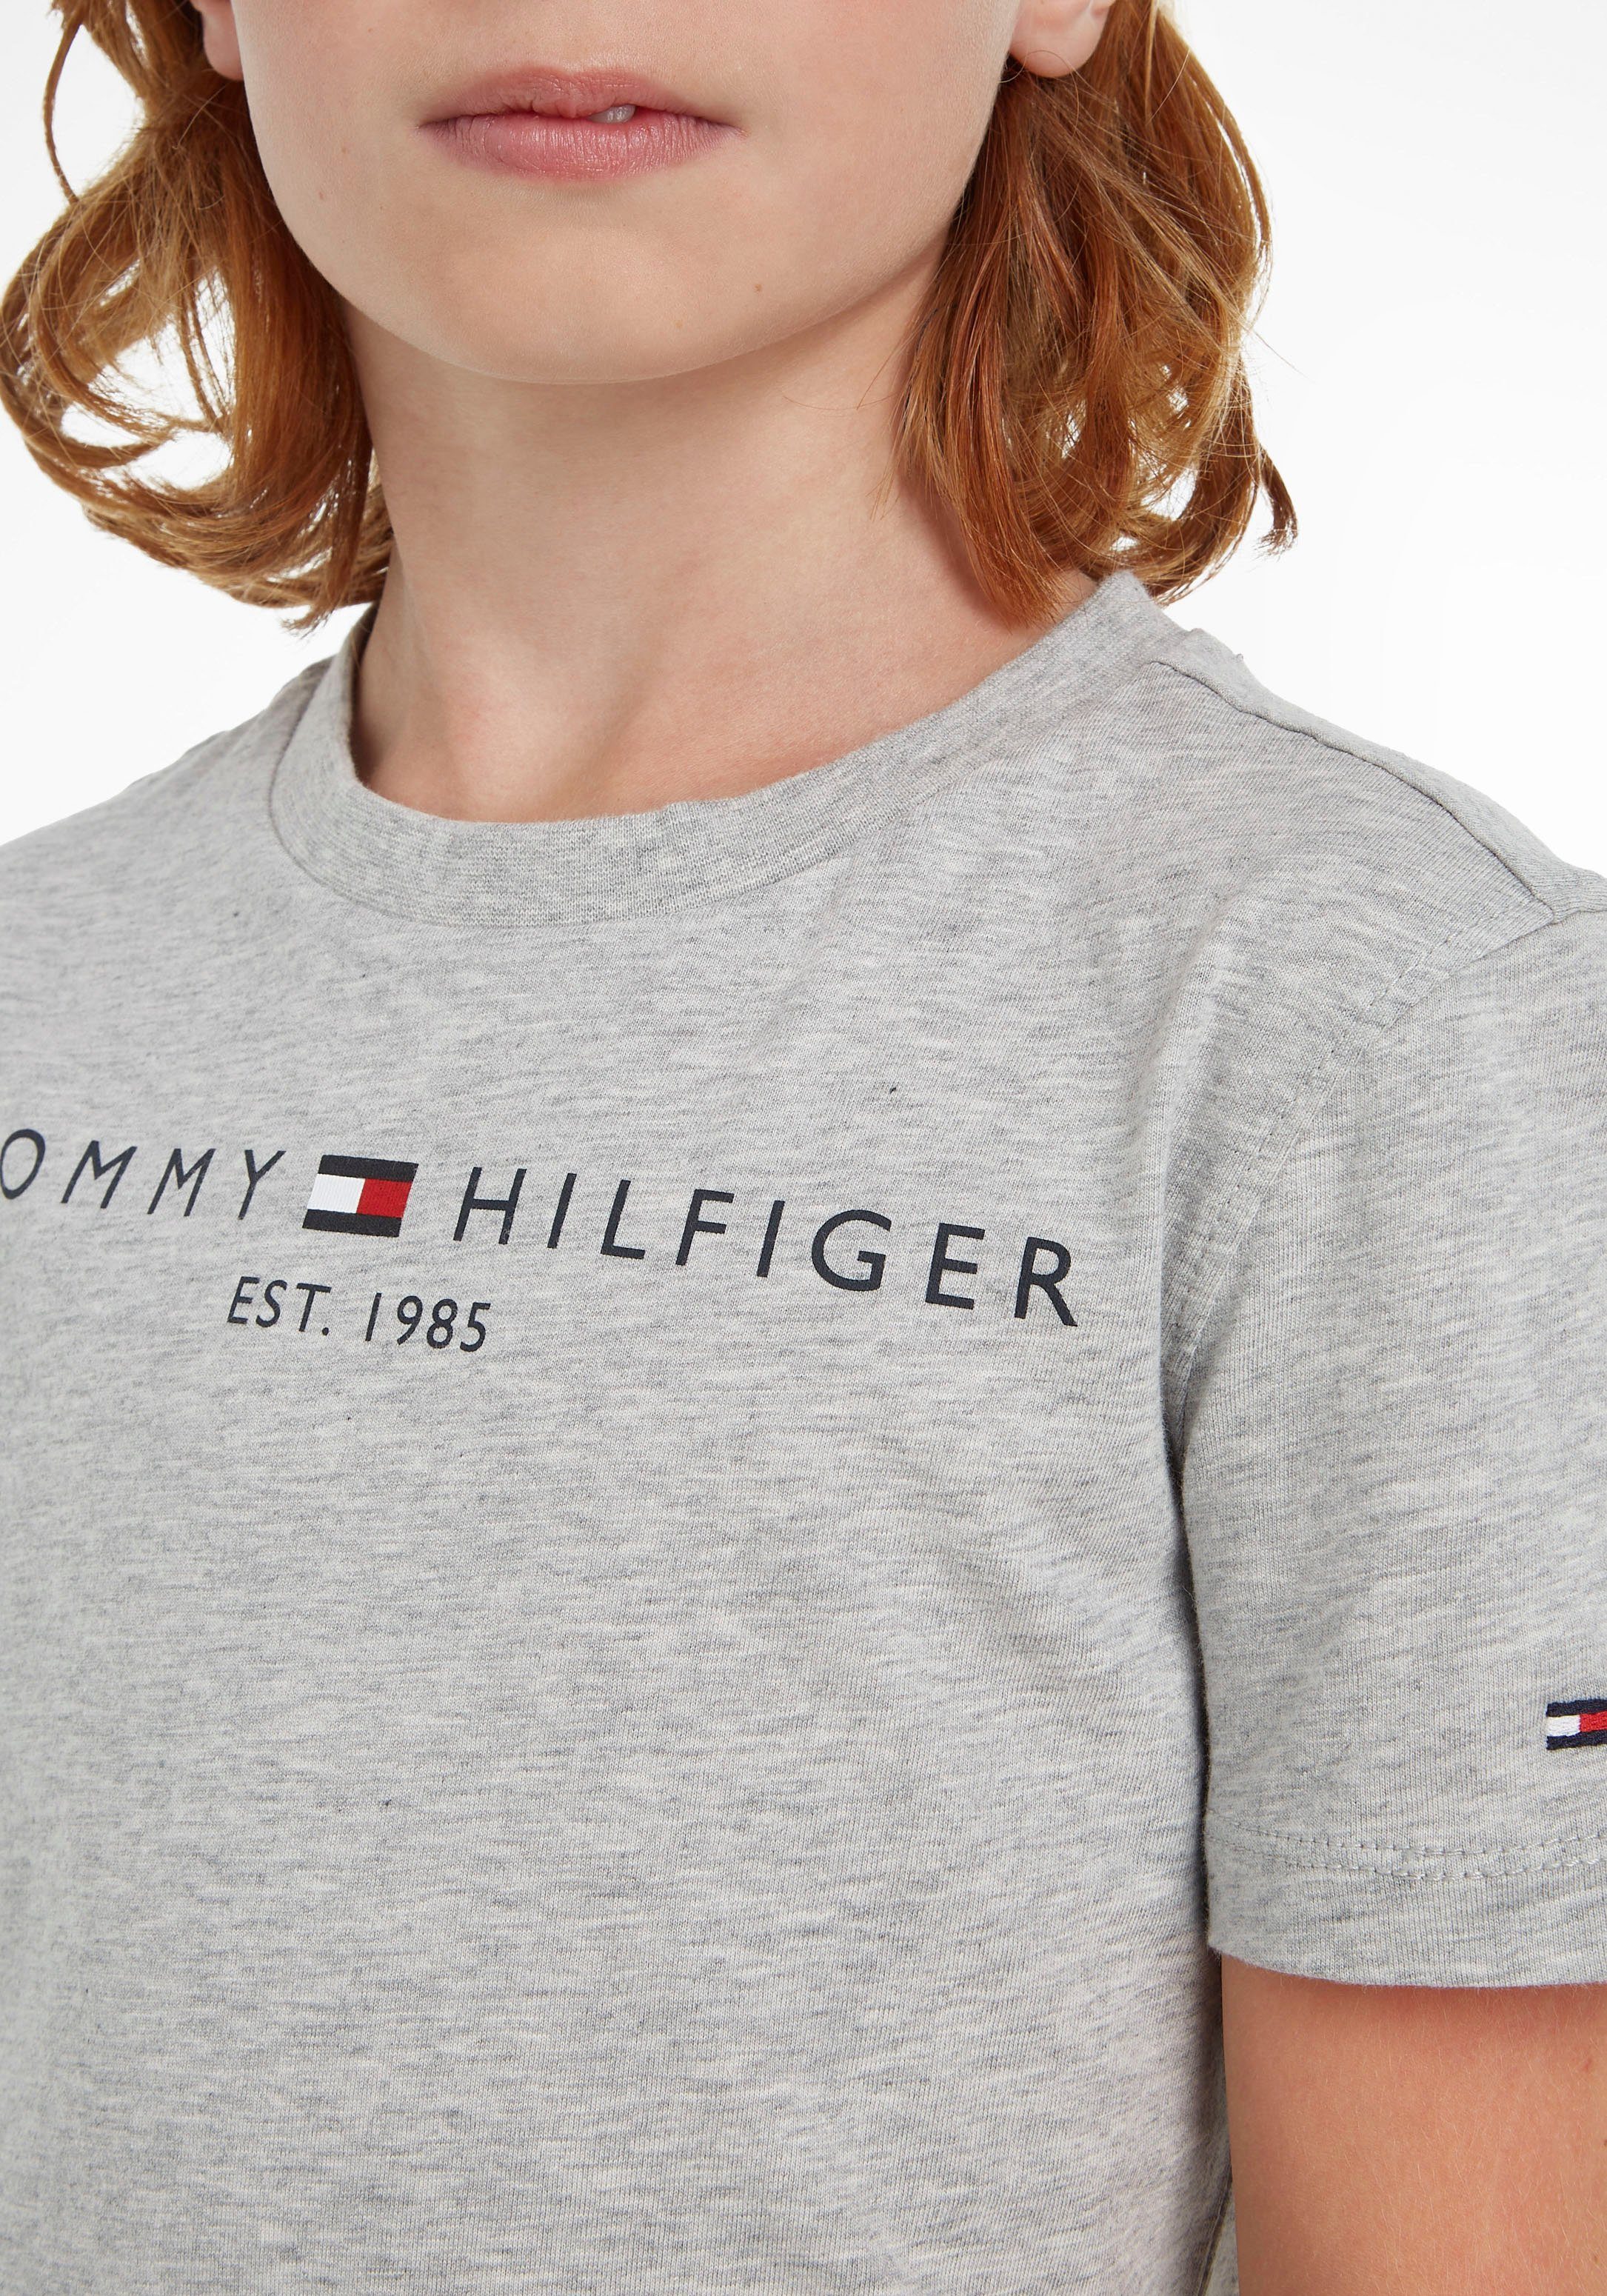 Tommy Hilfiger T-Shirt ESSENTIAL und Mädchen MiniMe,für Kids Kinder Jungen TEE Junior